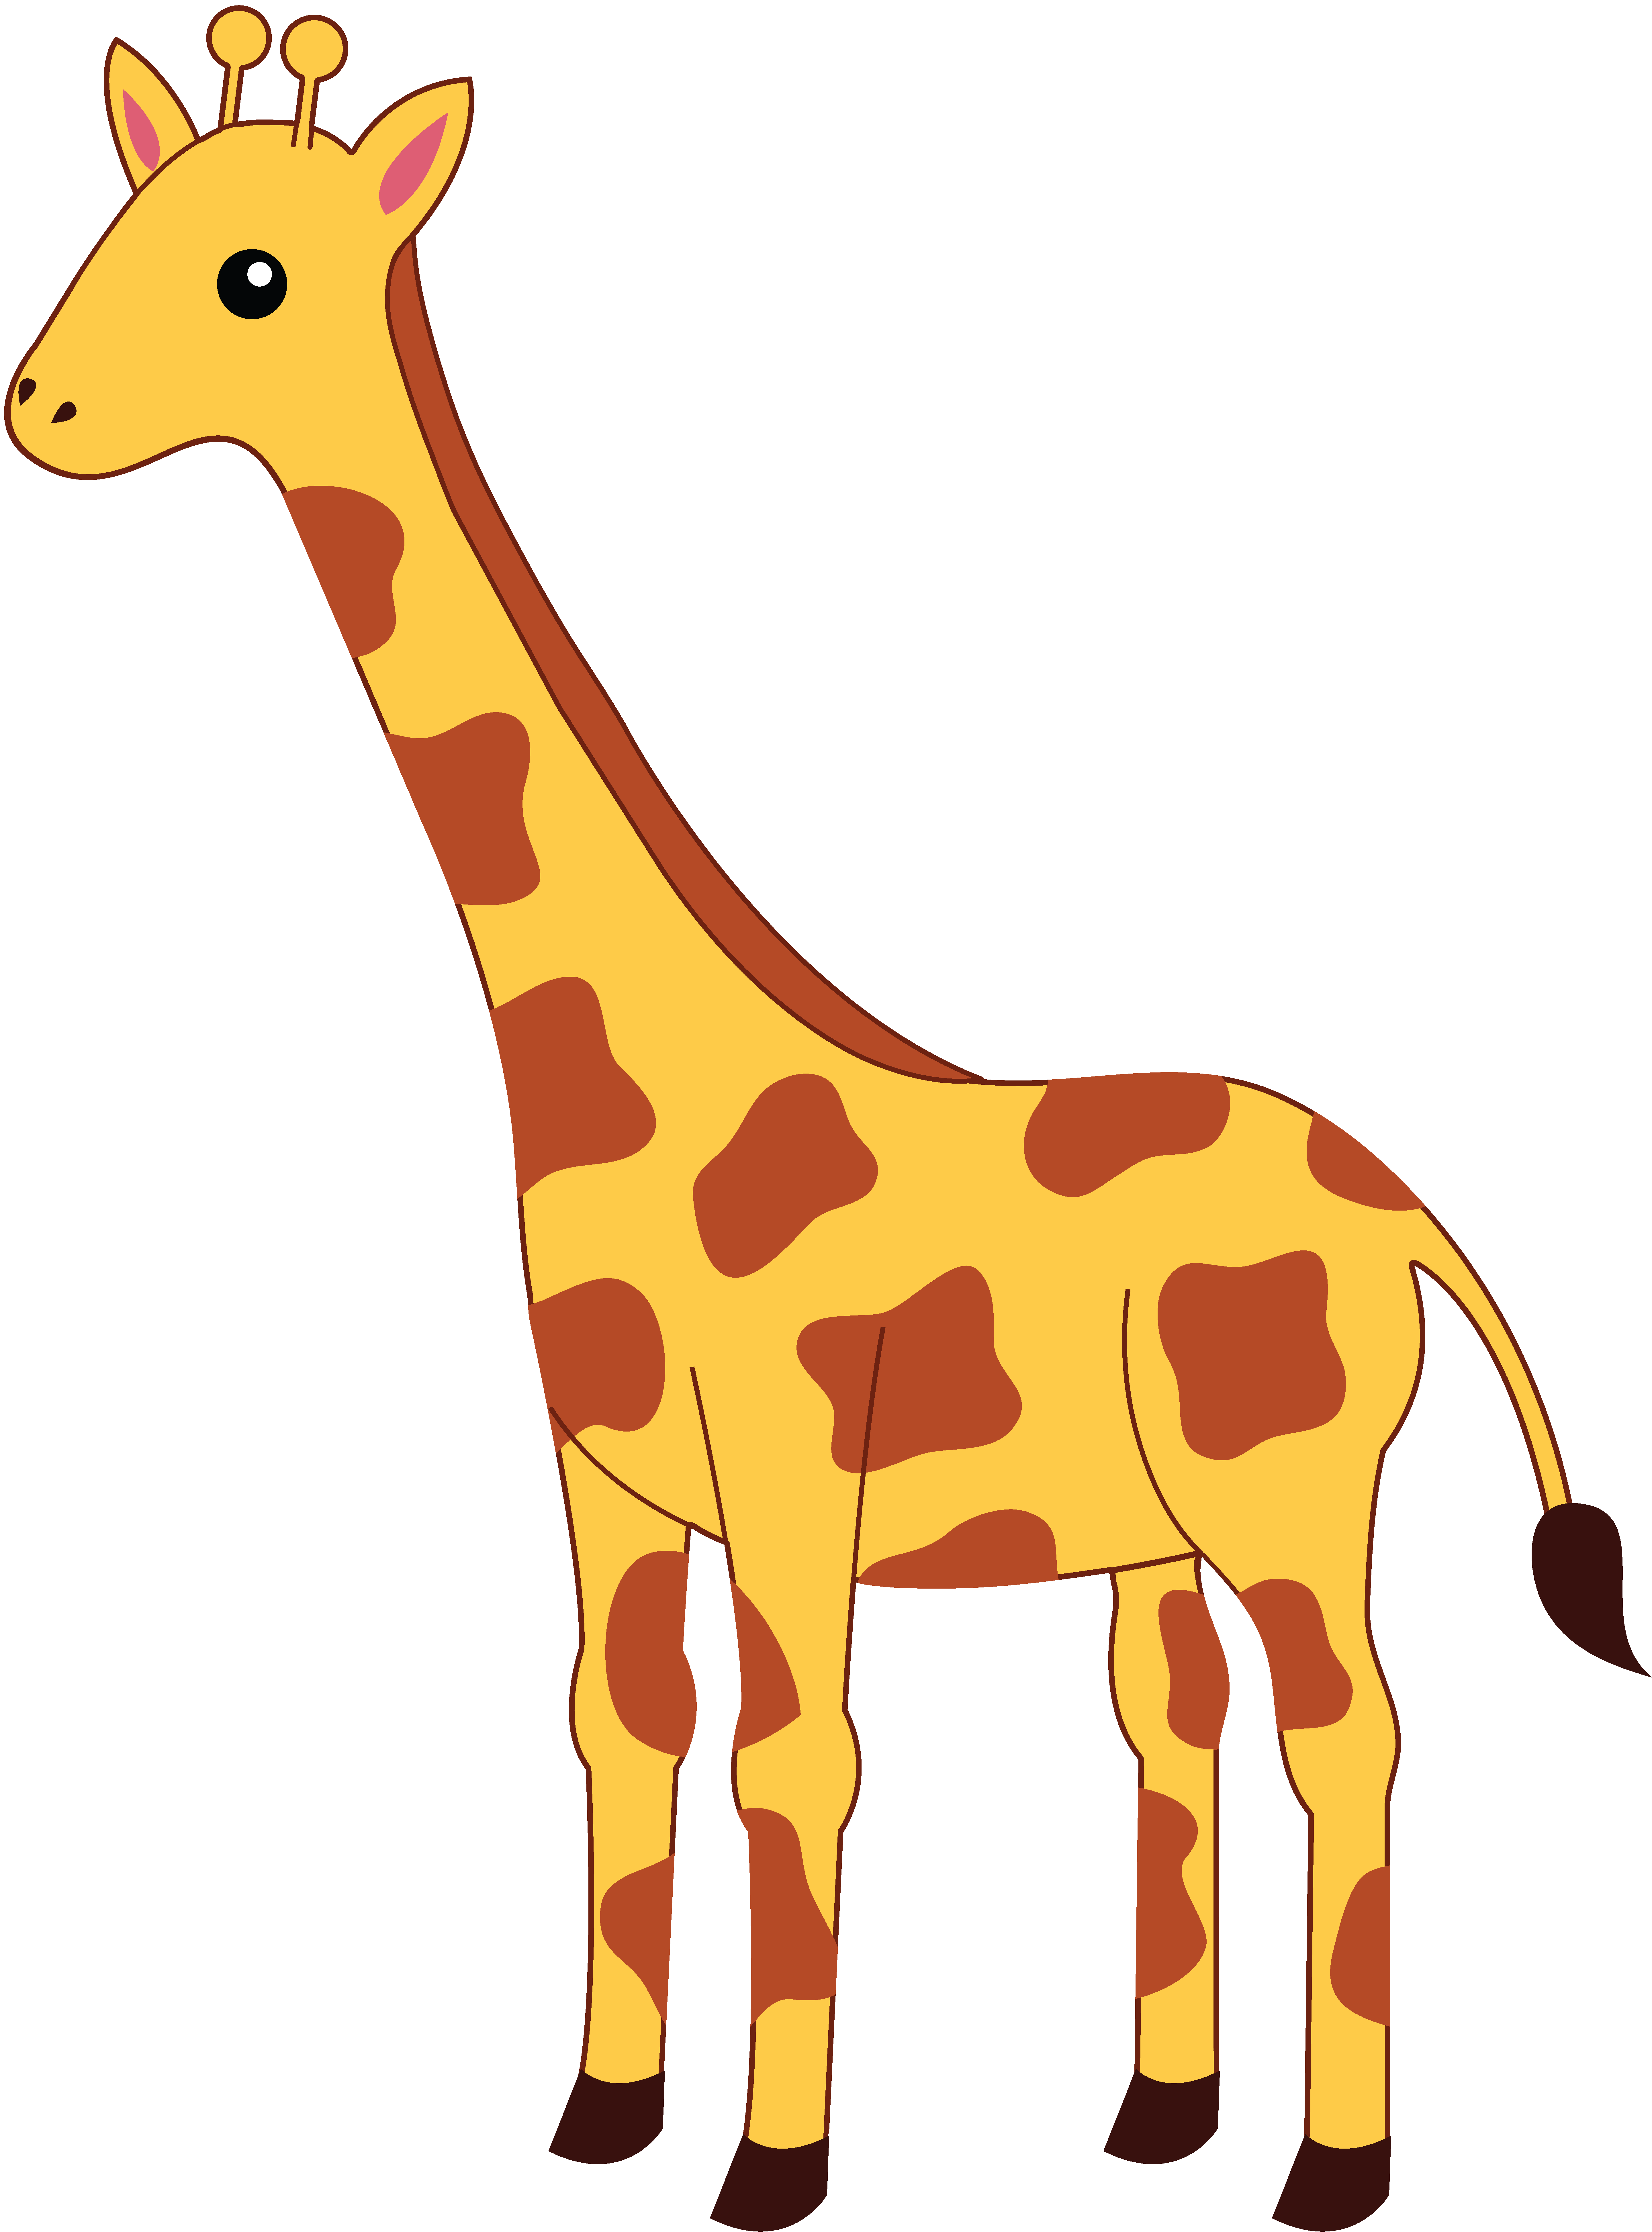 Giraffe by Giselle Belen